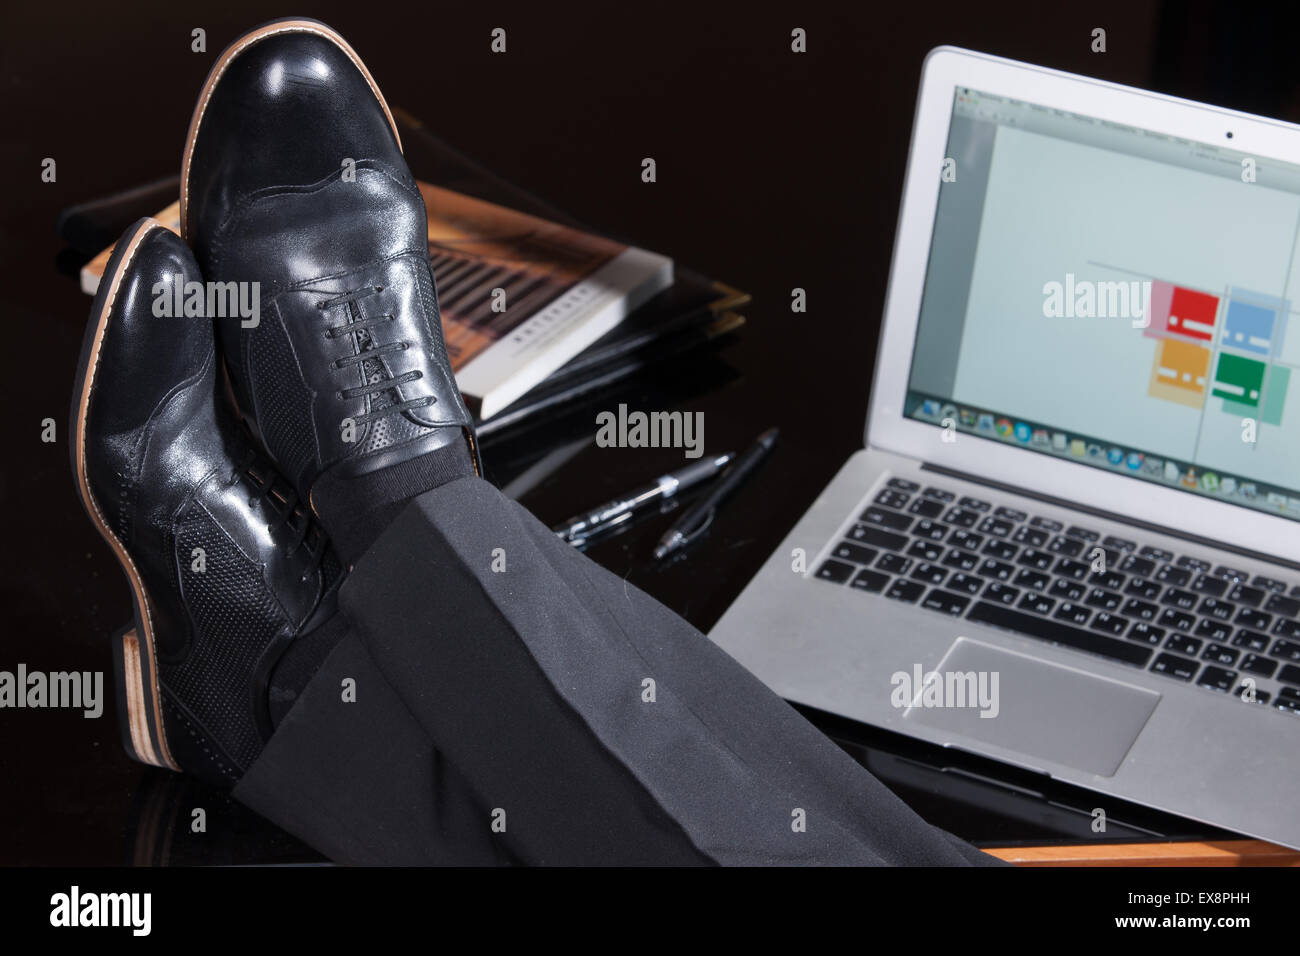 Uomo uomini persone gamba maschio Pantaloni Pantaloni scarpe computer notebook schermo tastiera di monitorare le informazioni di tabella di riflessione di vetro technol Foto Stock